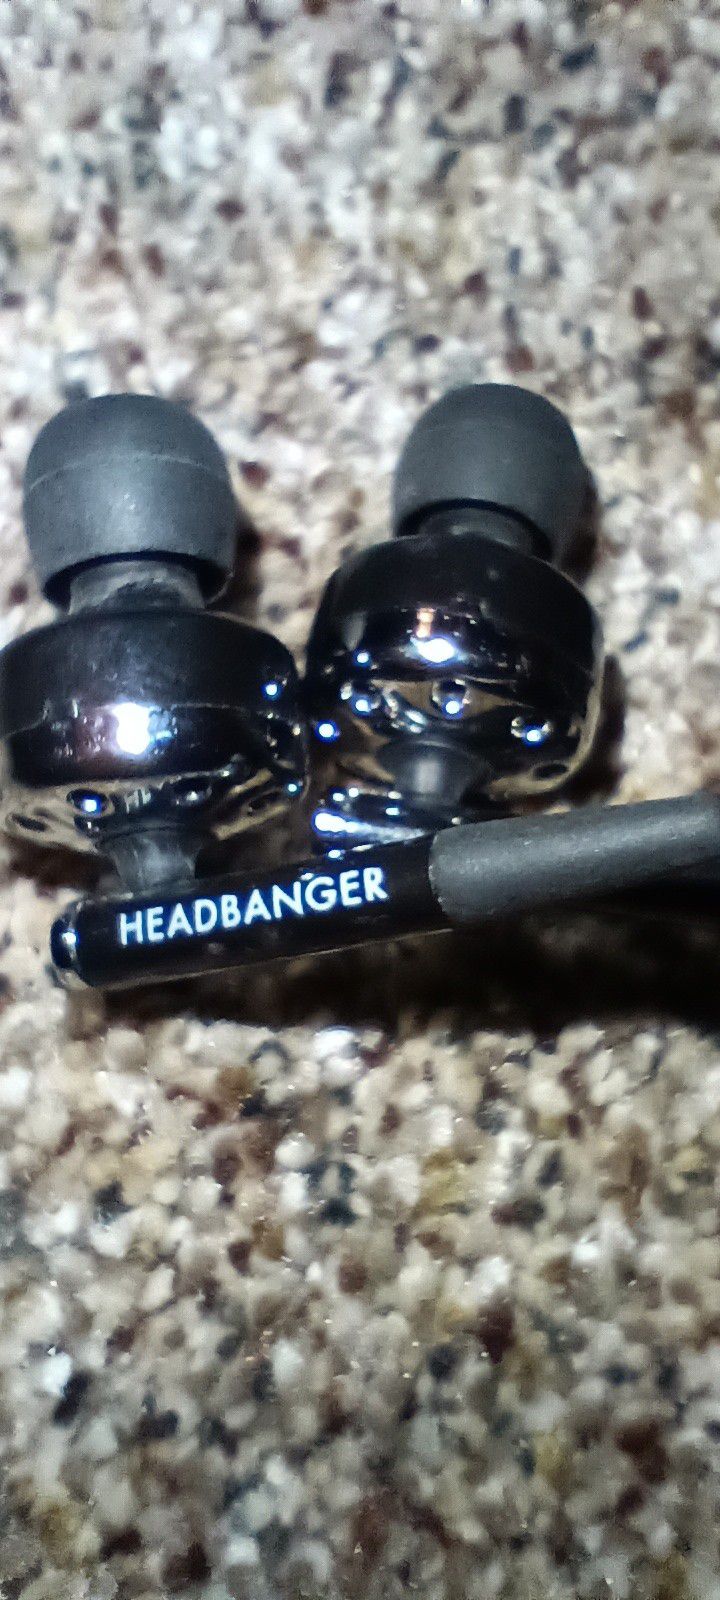 Headbanger Audio Pro headphones for Sony PSP portable game station 